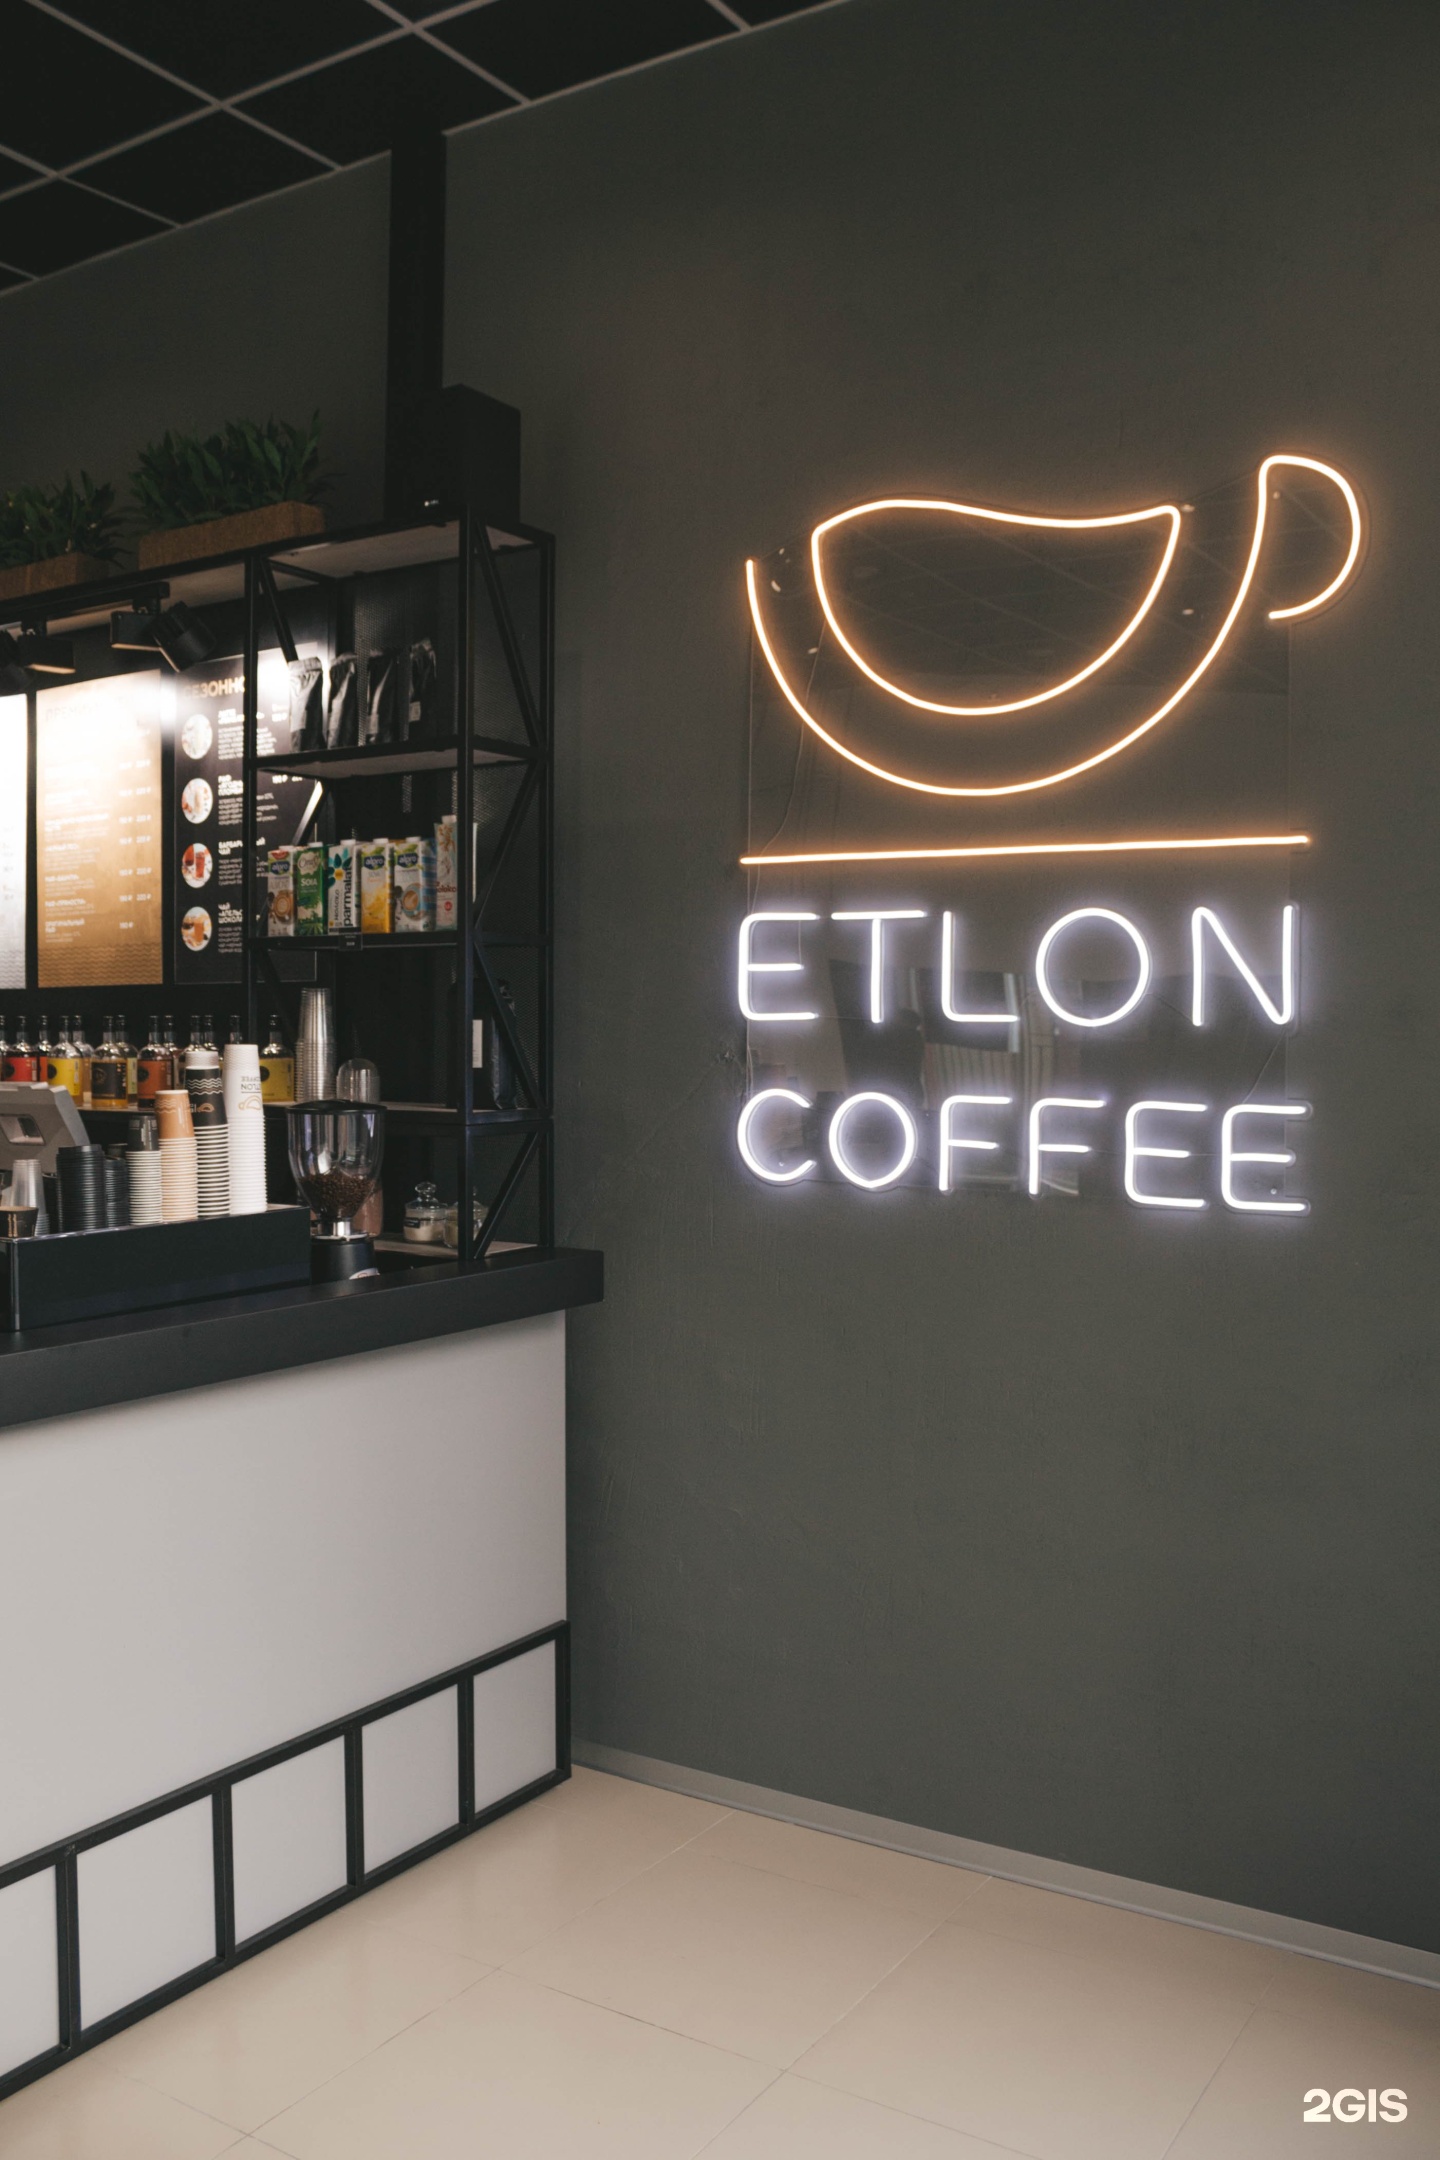 Элтон кофе. Etlon Coffee СПБ. Элтон кофе кофейня. Кофейня Etlon Coffee. Etlon Coffee меню.